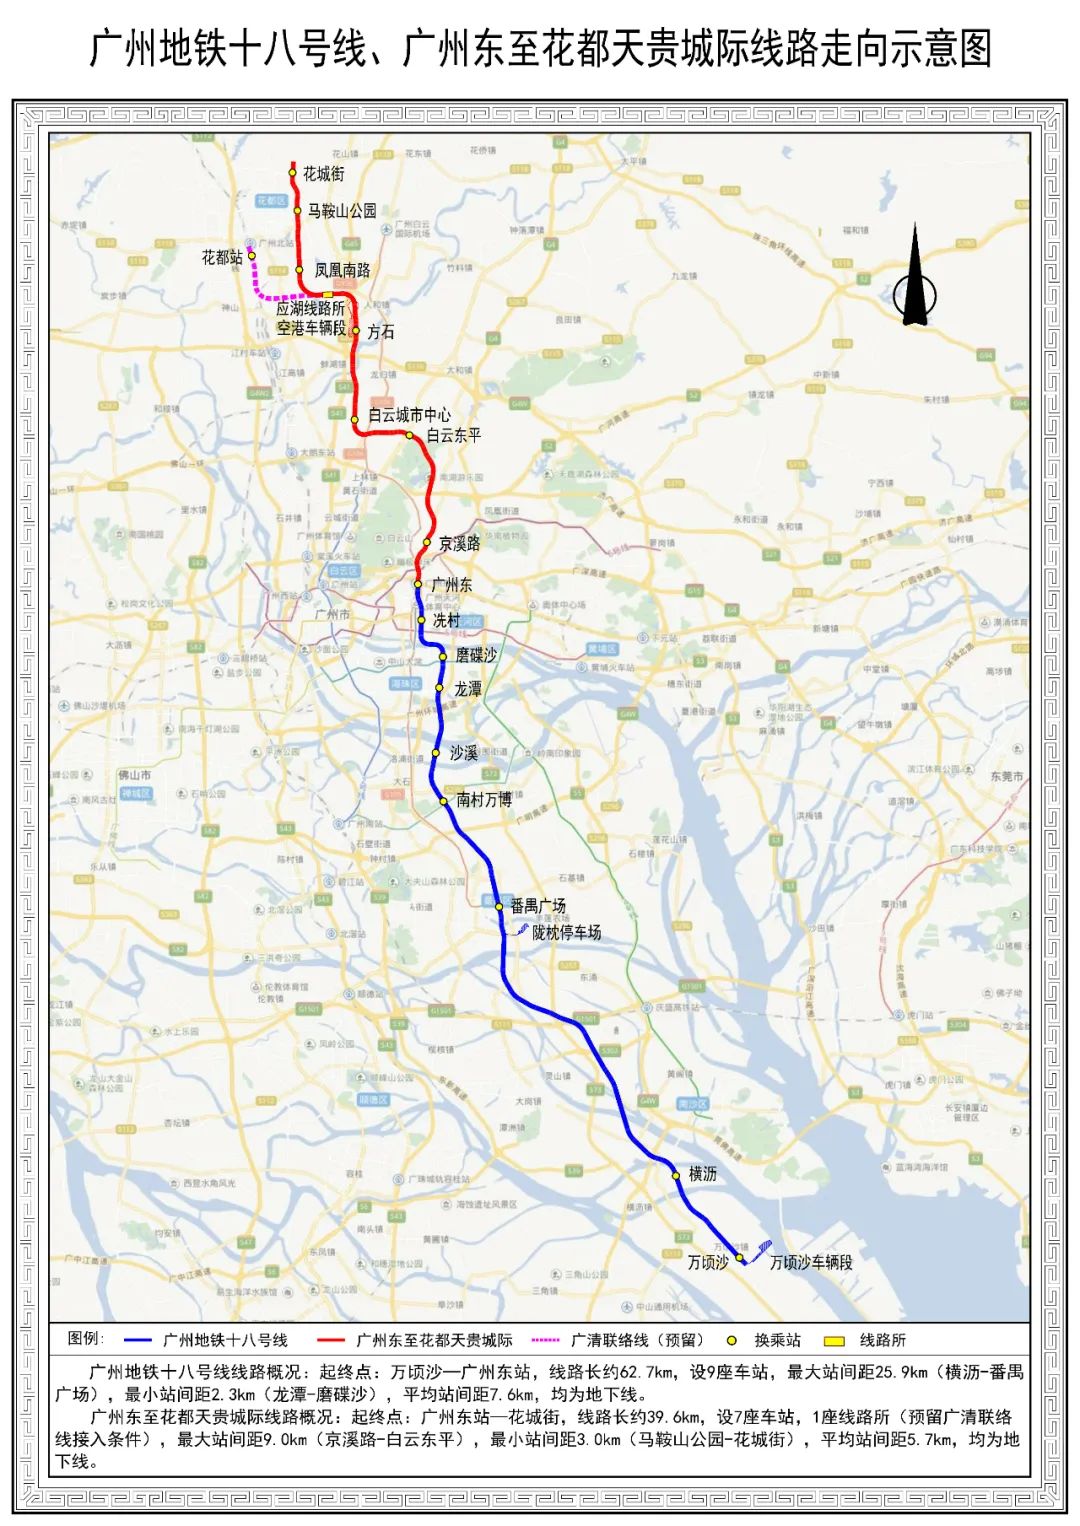 地铁十八号线贯通运营,未来规划进一步向南北延伸,形成广州都市圈重要